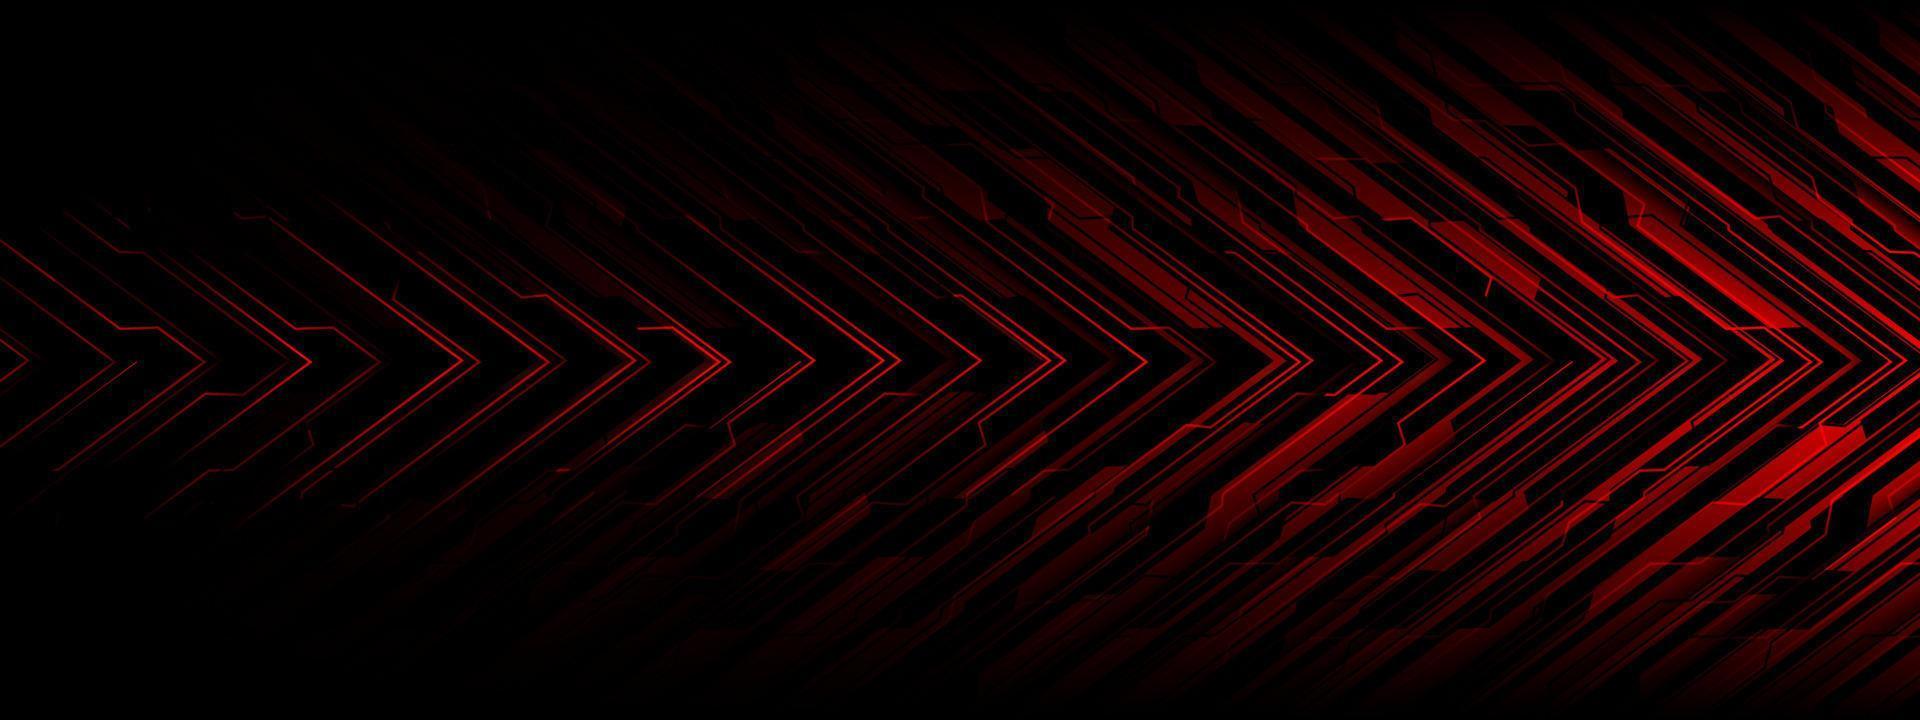 abstrato circuito vermelho poder ciber seta direção geométrica sombra preta projeto de tecnologia futurista vetor de fundo